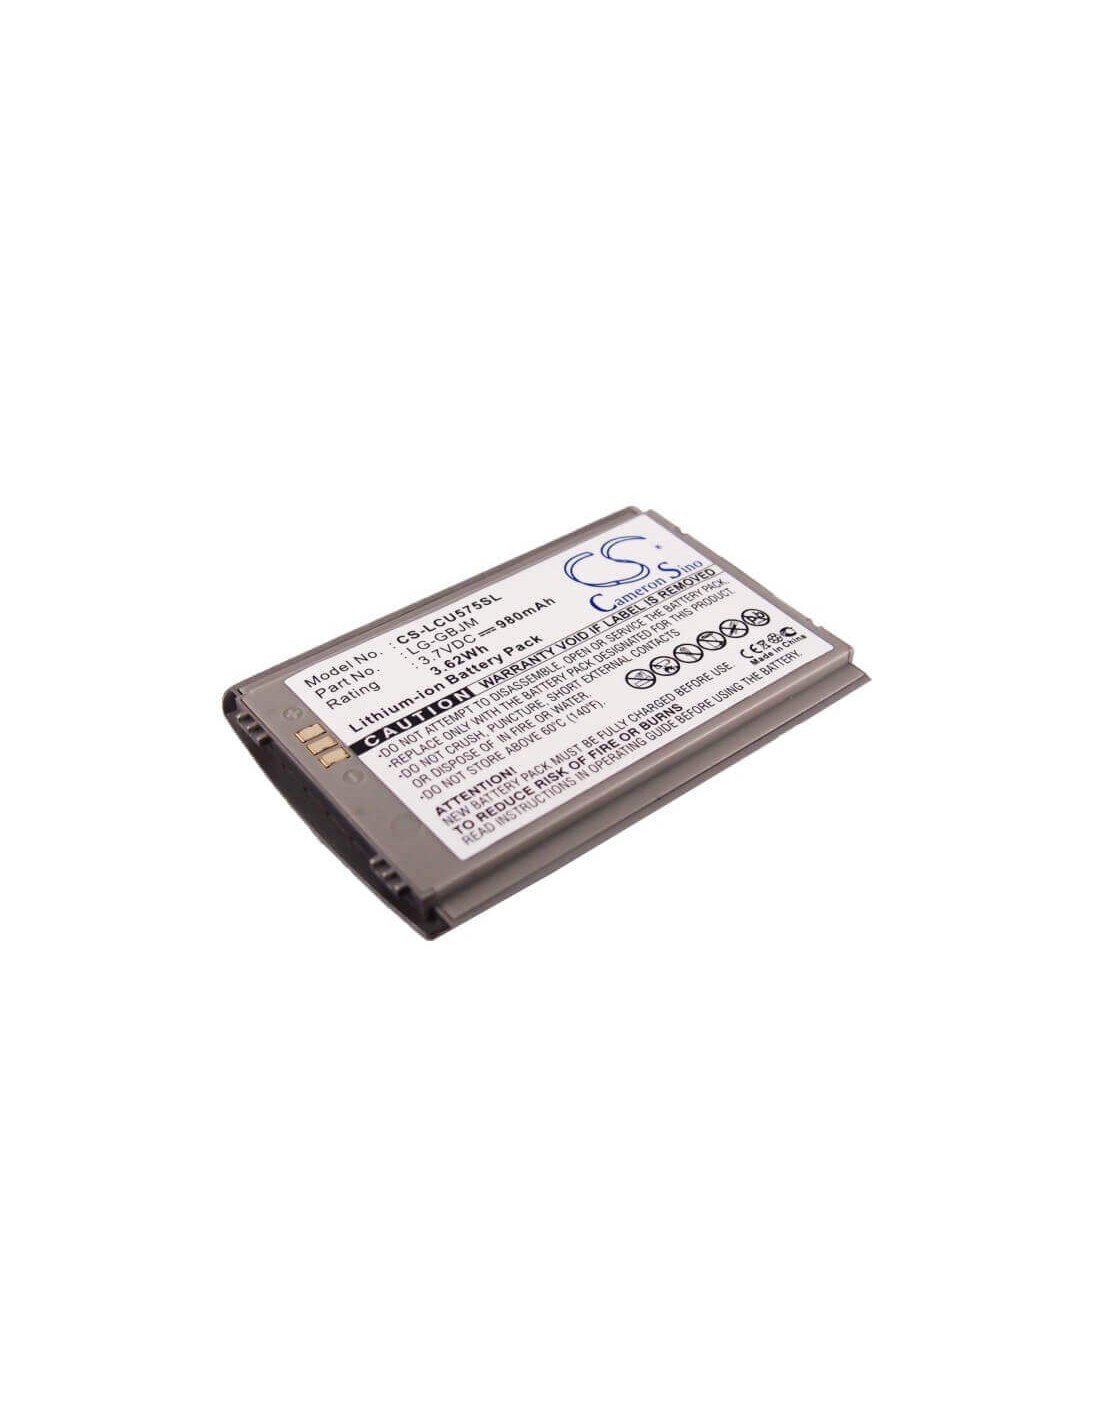 Battery for LG CU575, Trax cu575, TU575 3.7V, 980mAh - 3.63Wh